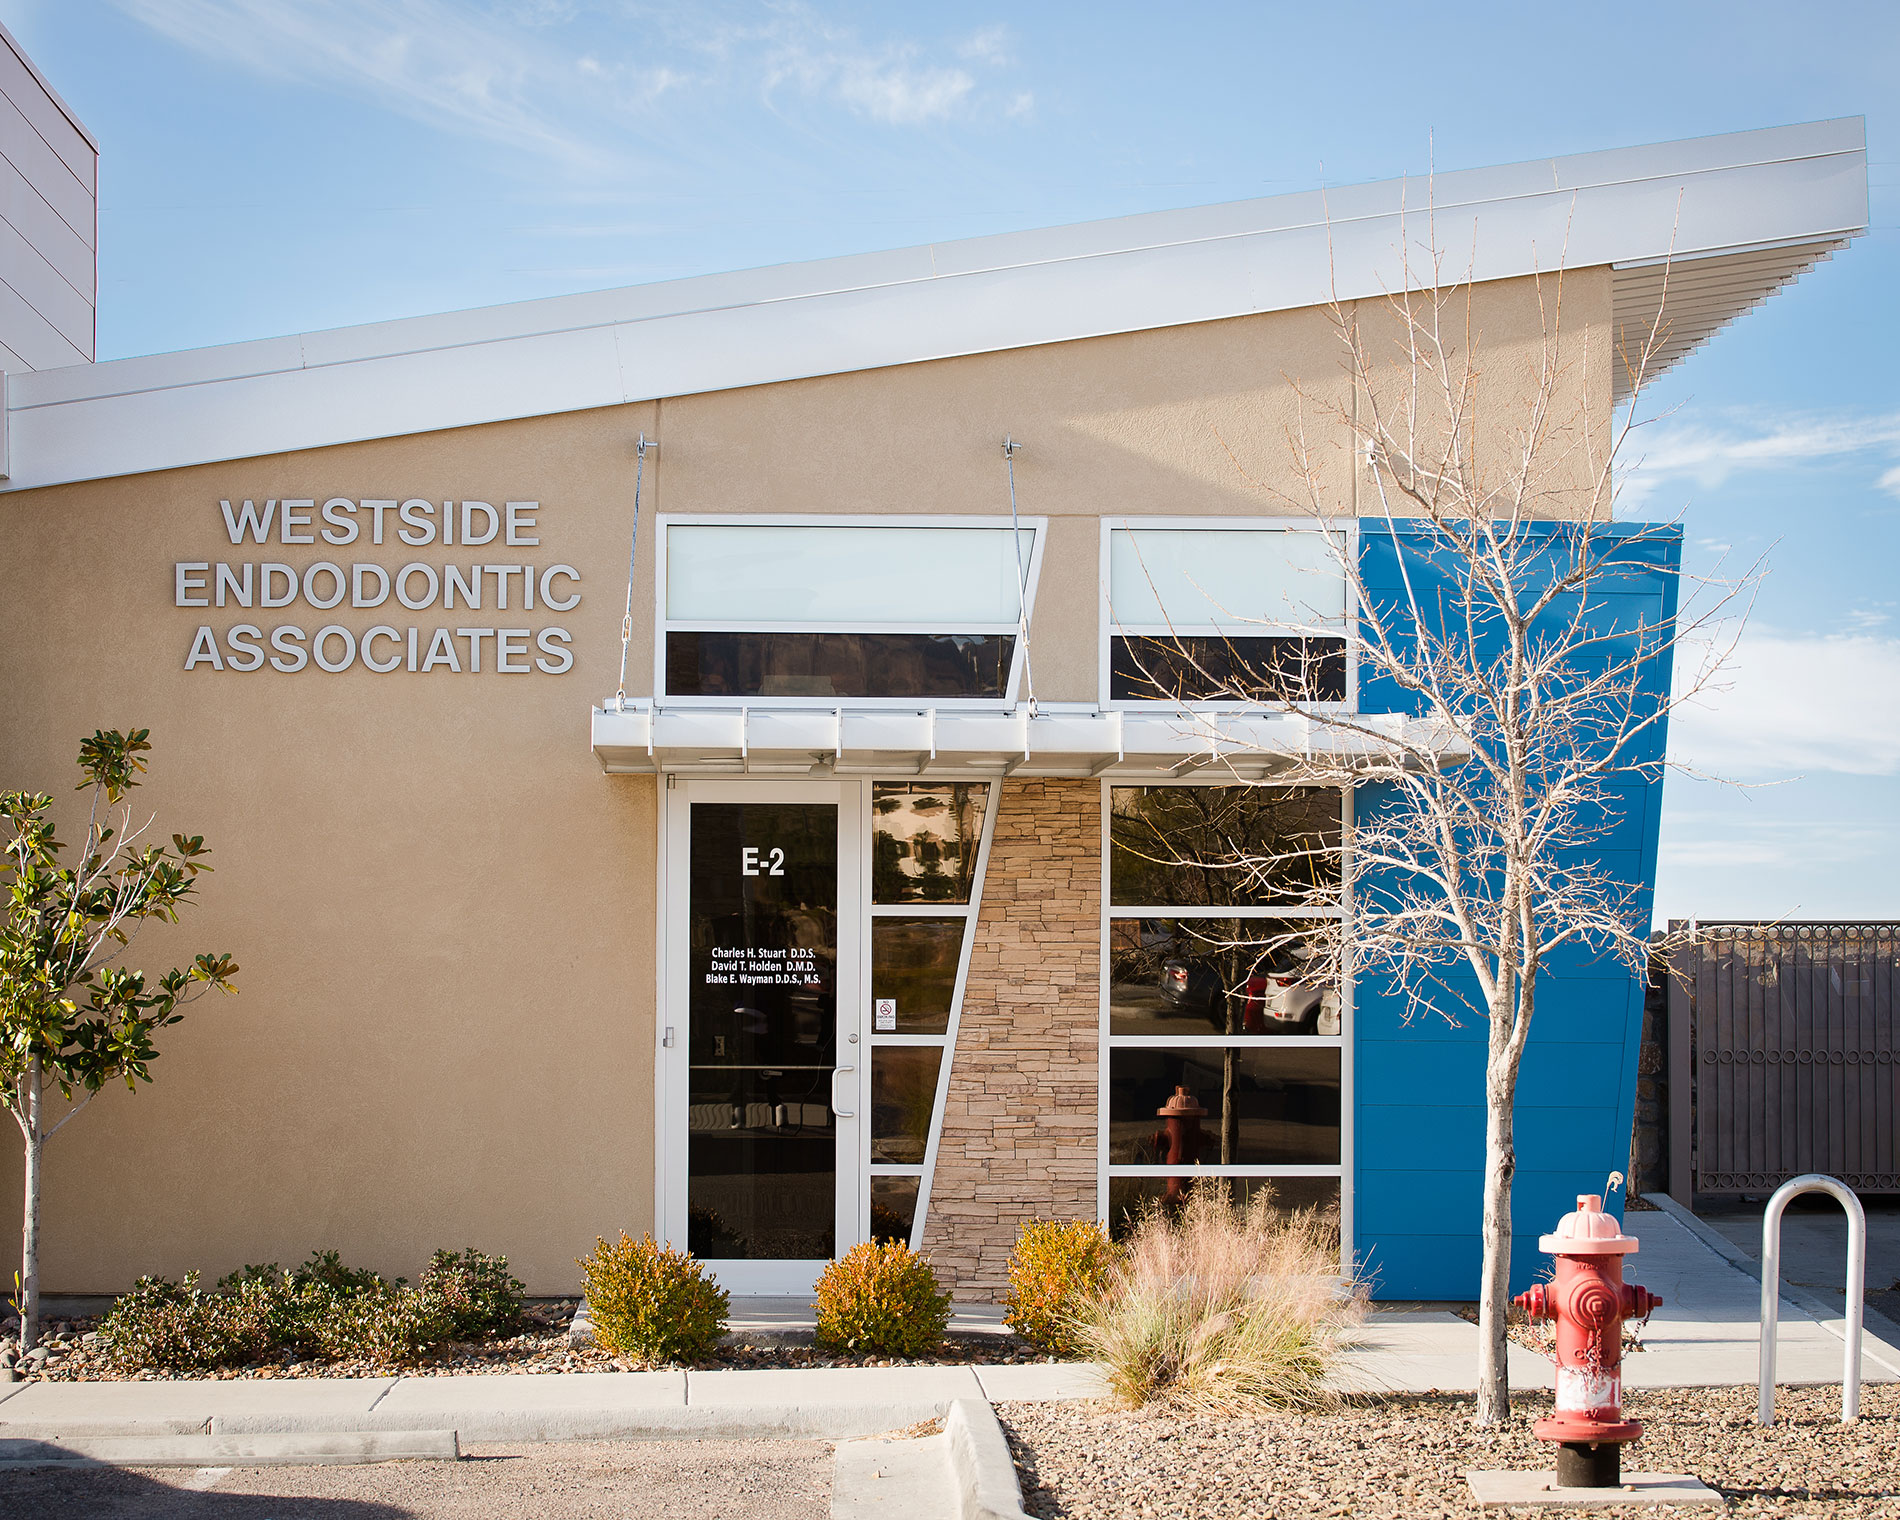 Westside Endodontic Associates